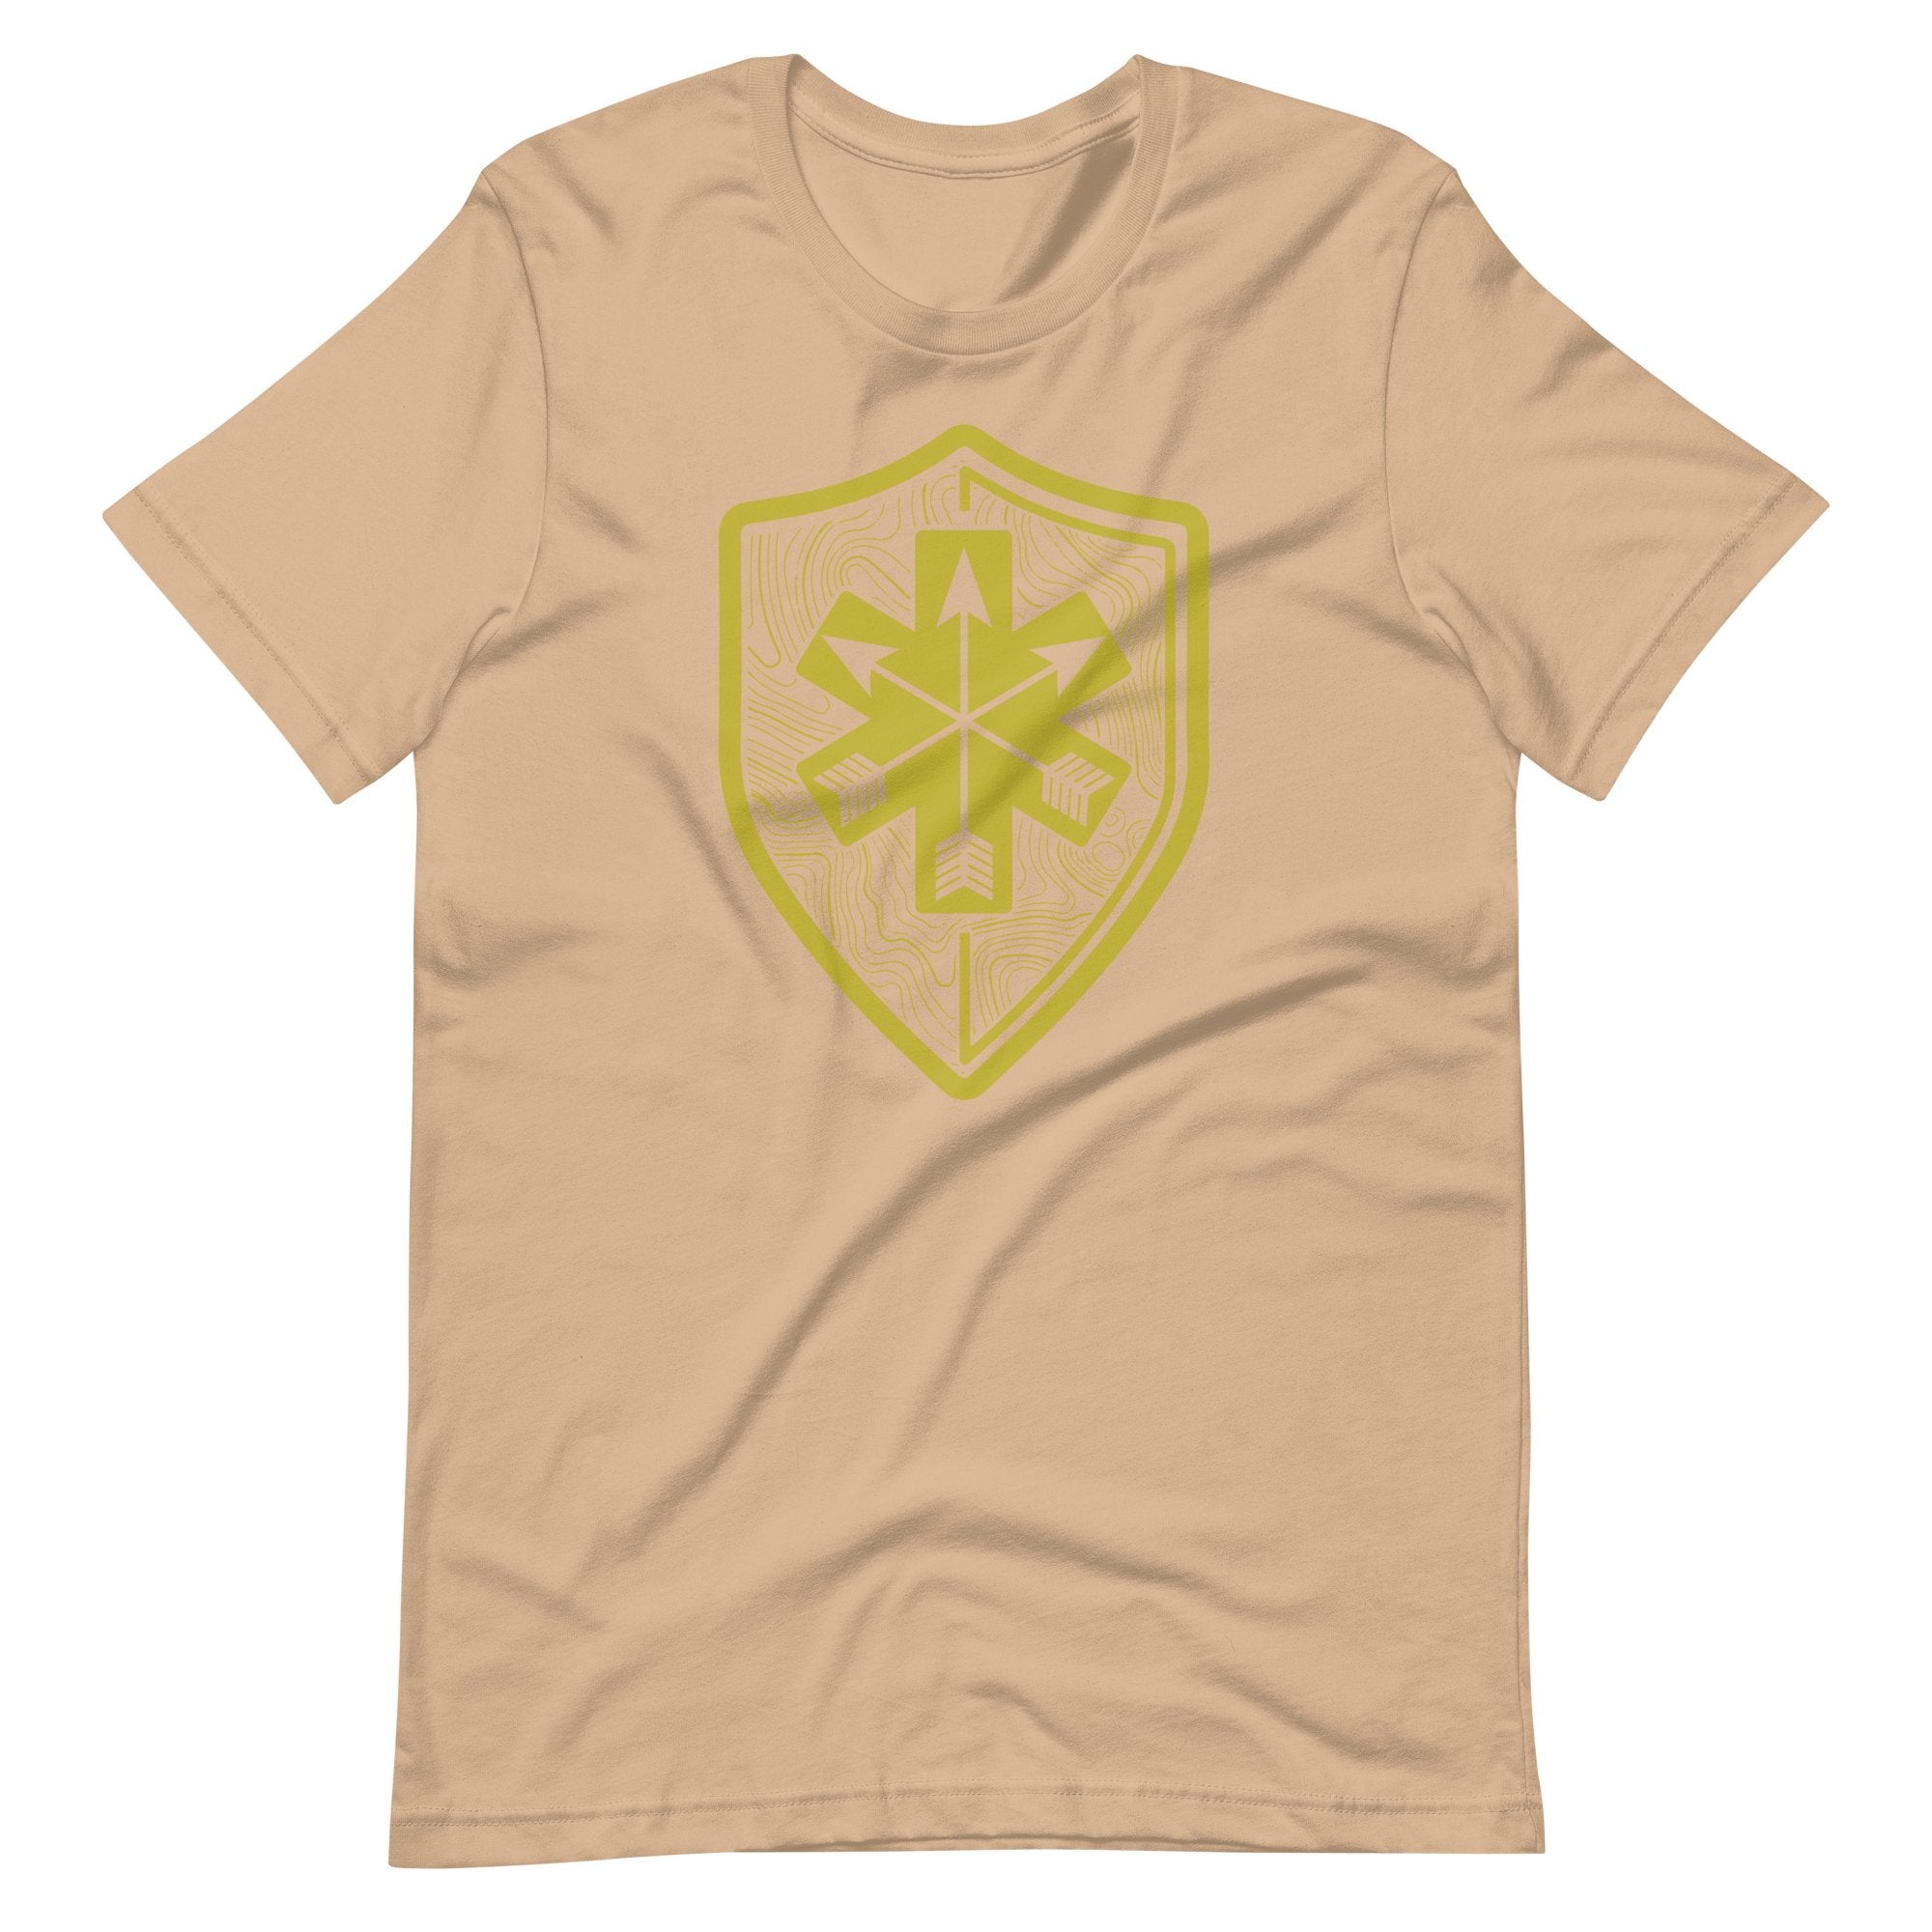 SOARescue - Gold Print Topo Shirt - SOARescue